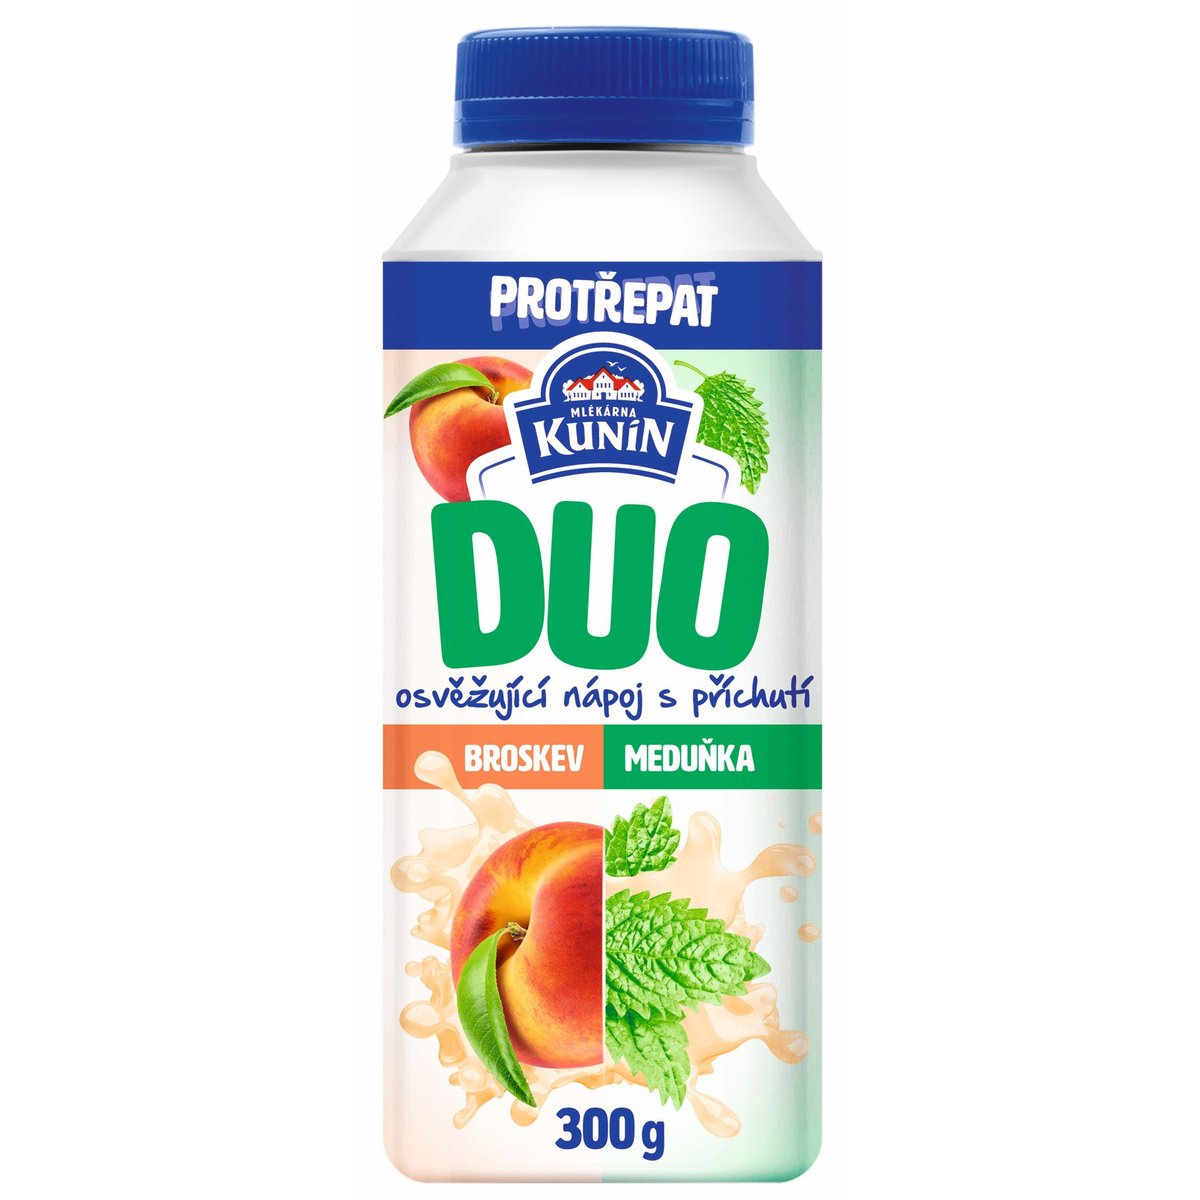 Mlékárna Kunín Duo zakysaný nápoj s příchutí broskev a meduňka